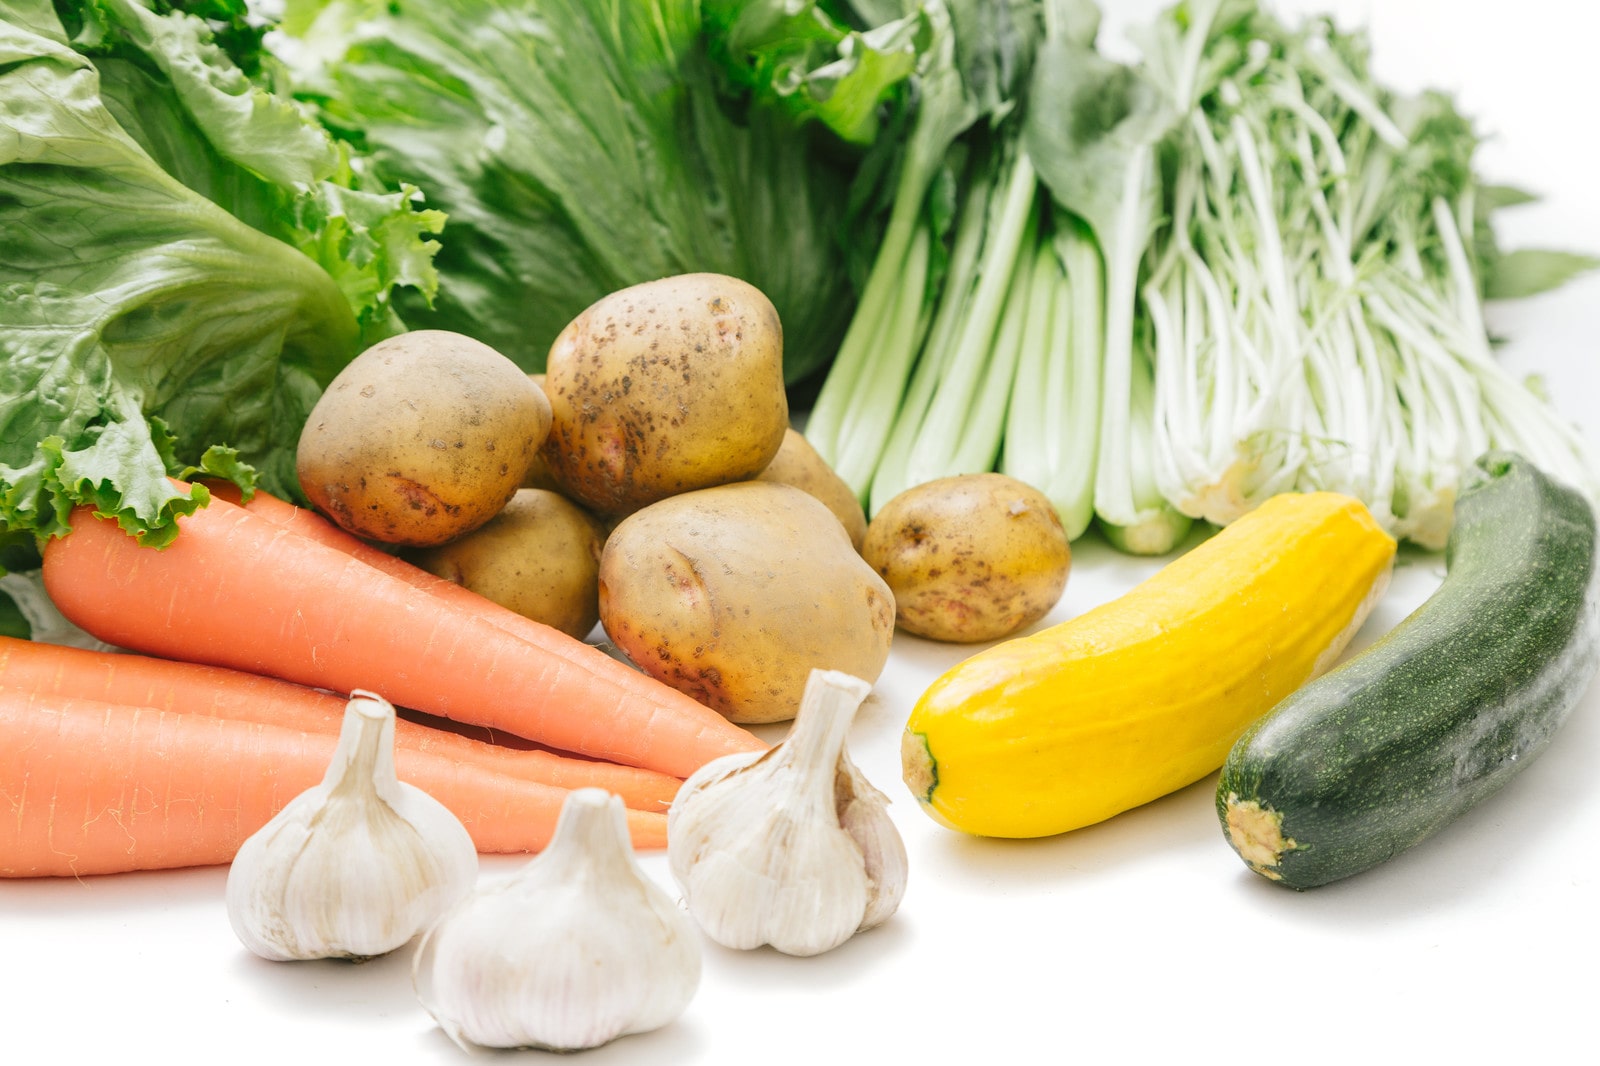 栄養価の高い野菜ランキング30種類をカテゴリー別に調査 葉菜類 果菜類 根菜類のベスト10を一覧で紹介します Pfcチェック